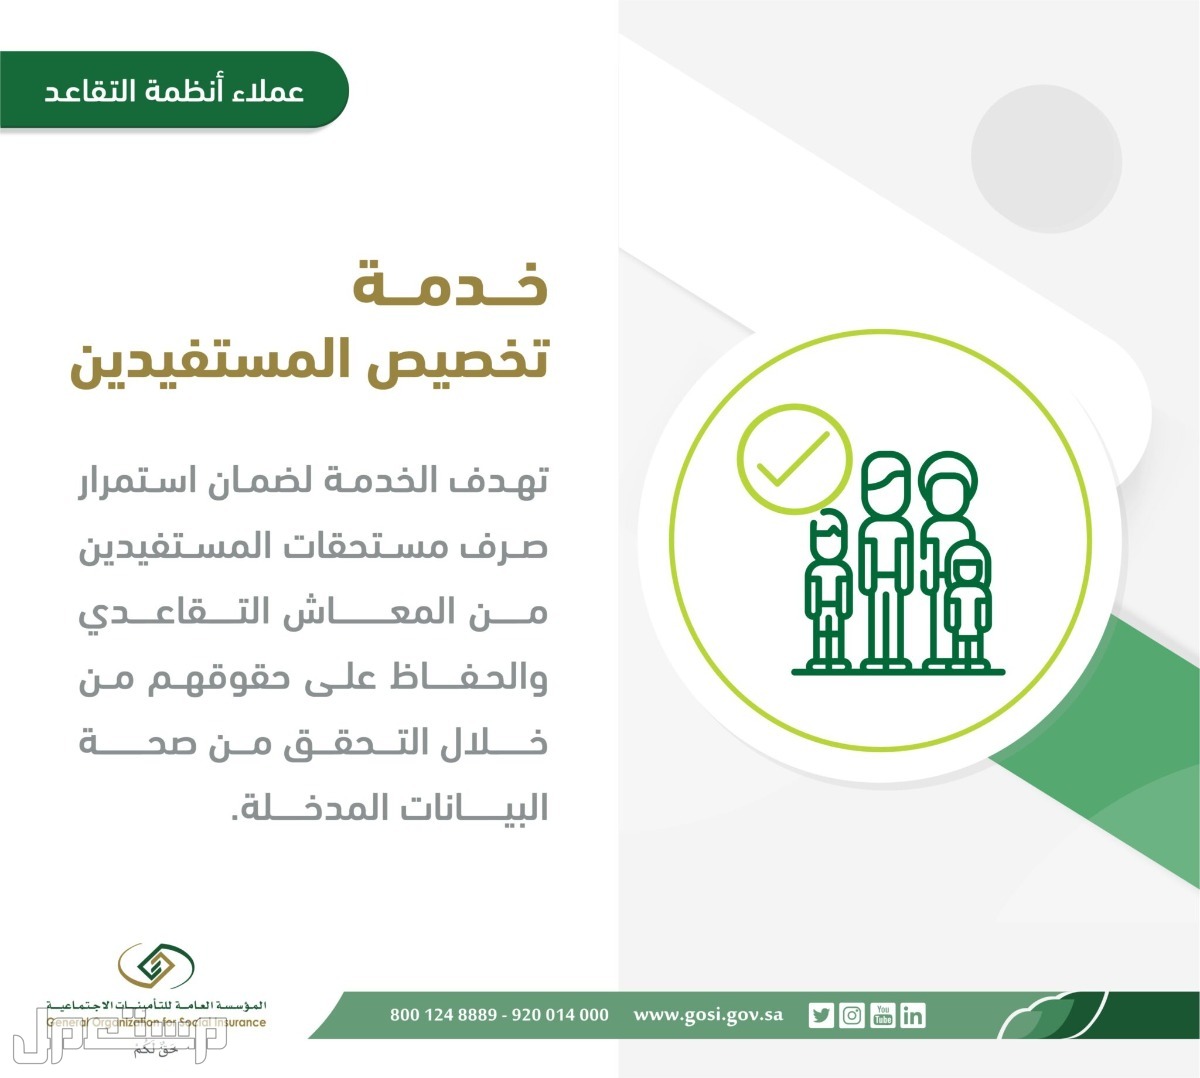 تعرف على خطوات تقديم طلب تخصيص المستفيدين المستحقين لتسوية المعاش في الجزائر خدمة تخصيص المستفيدين